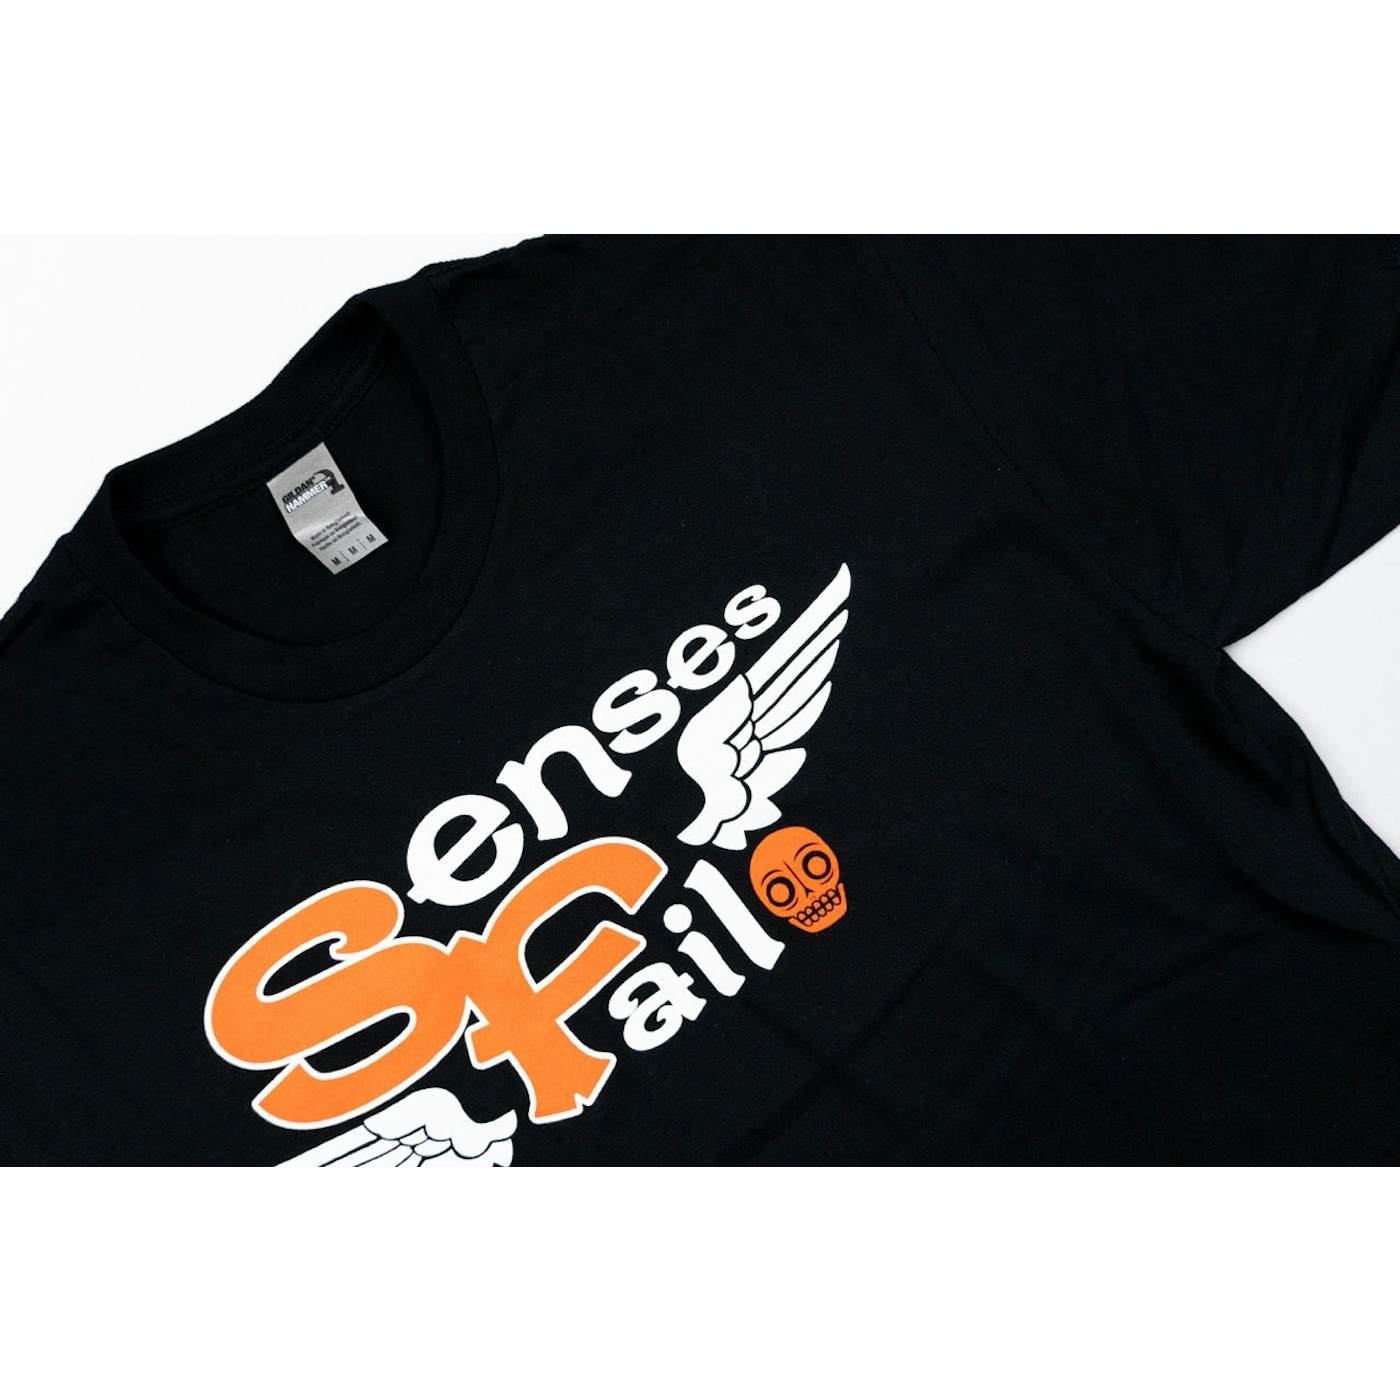 Senses Fail Wings Black T-Shirt